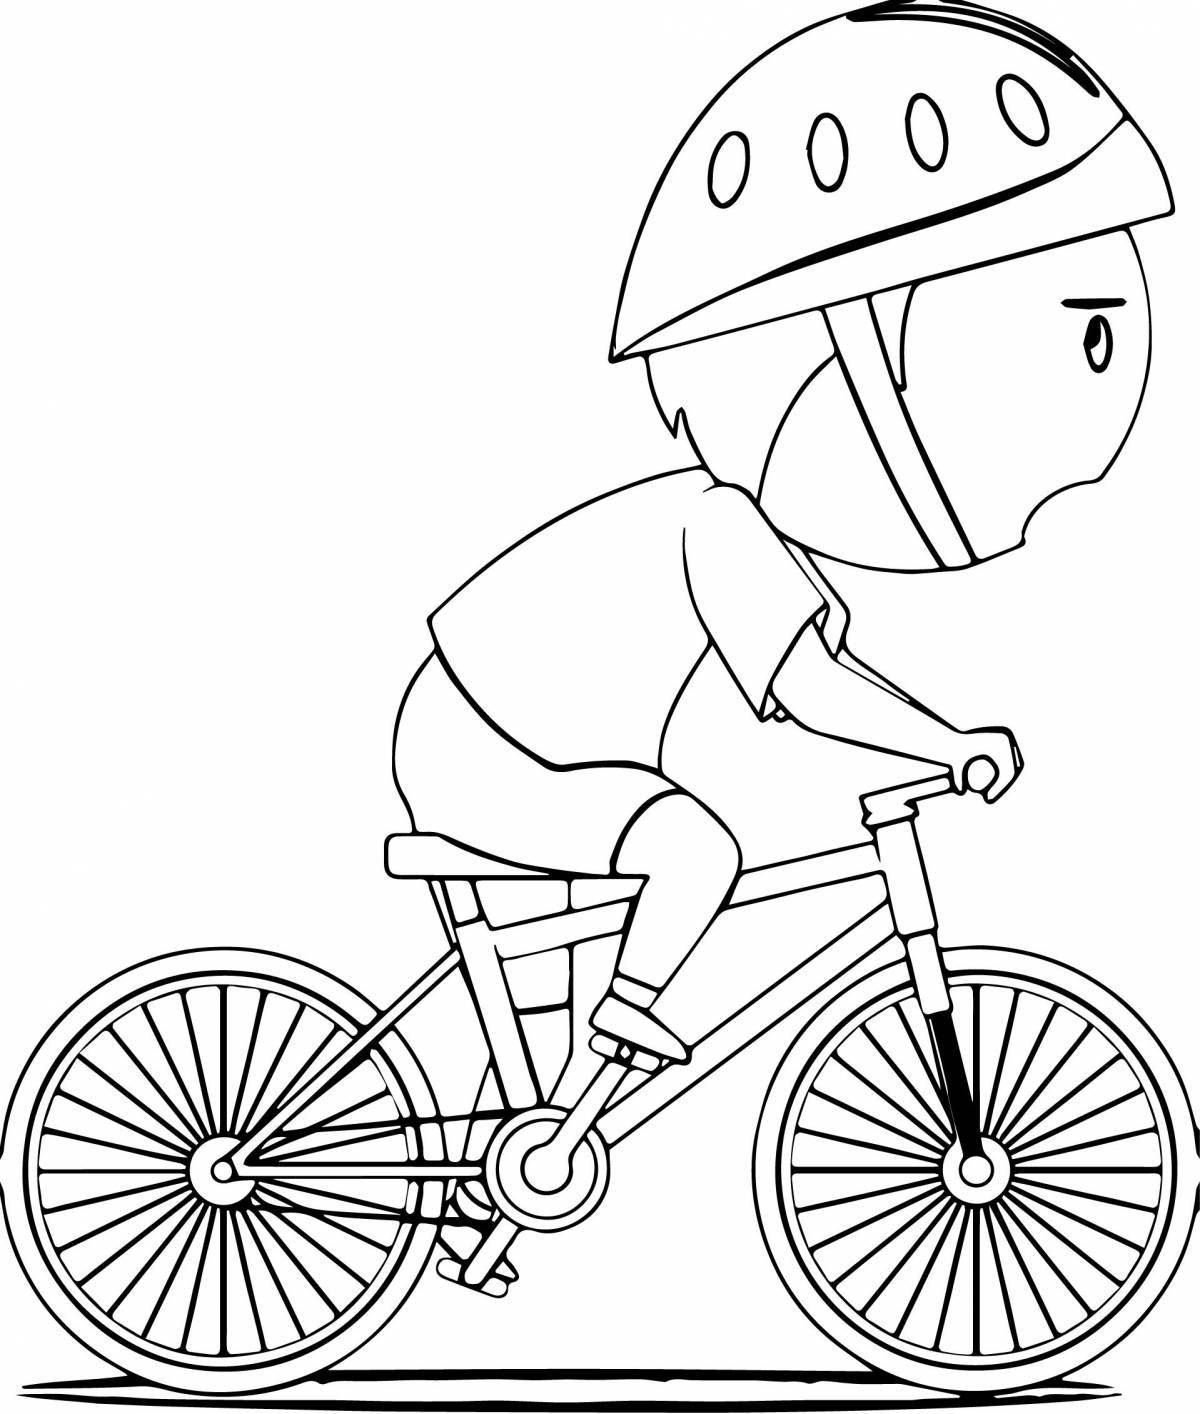 Забавная раскраска велосипедов для детей